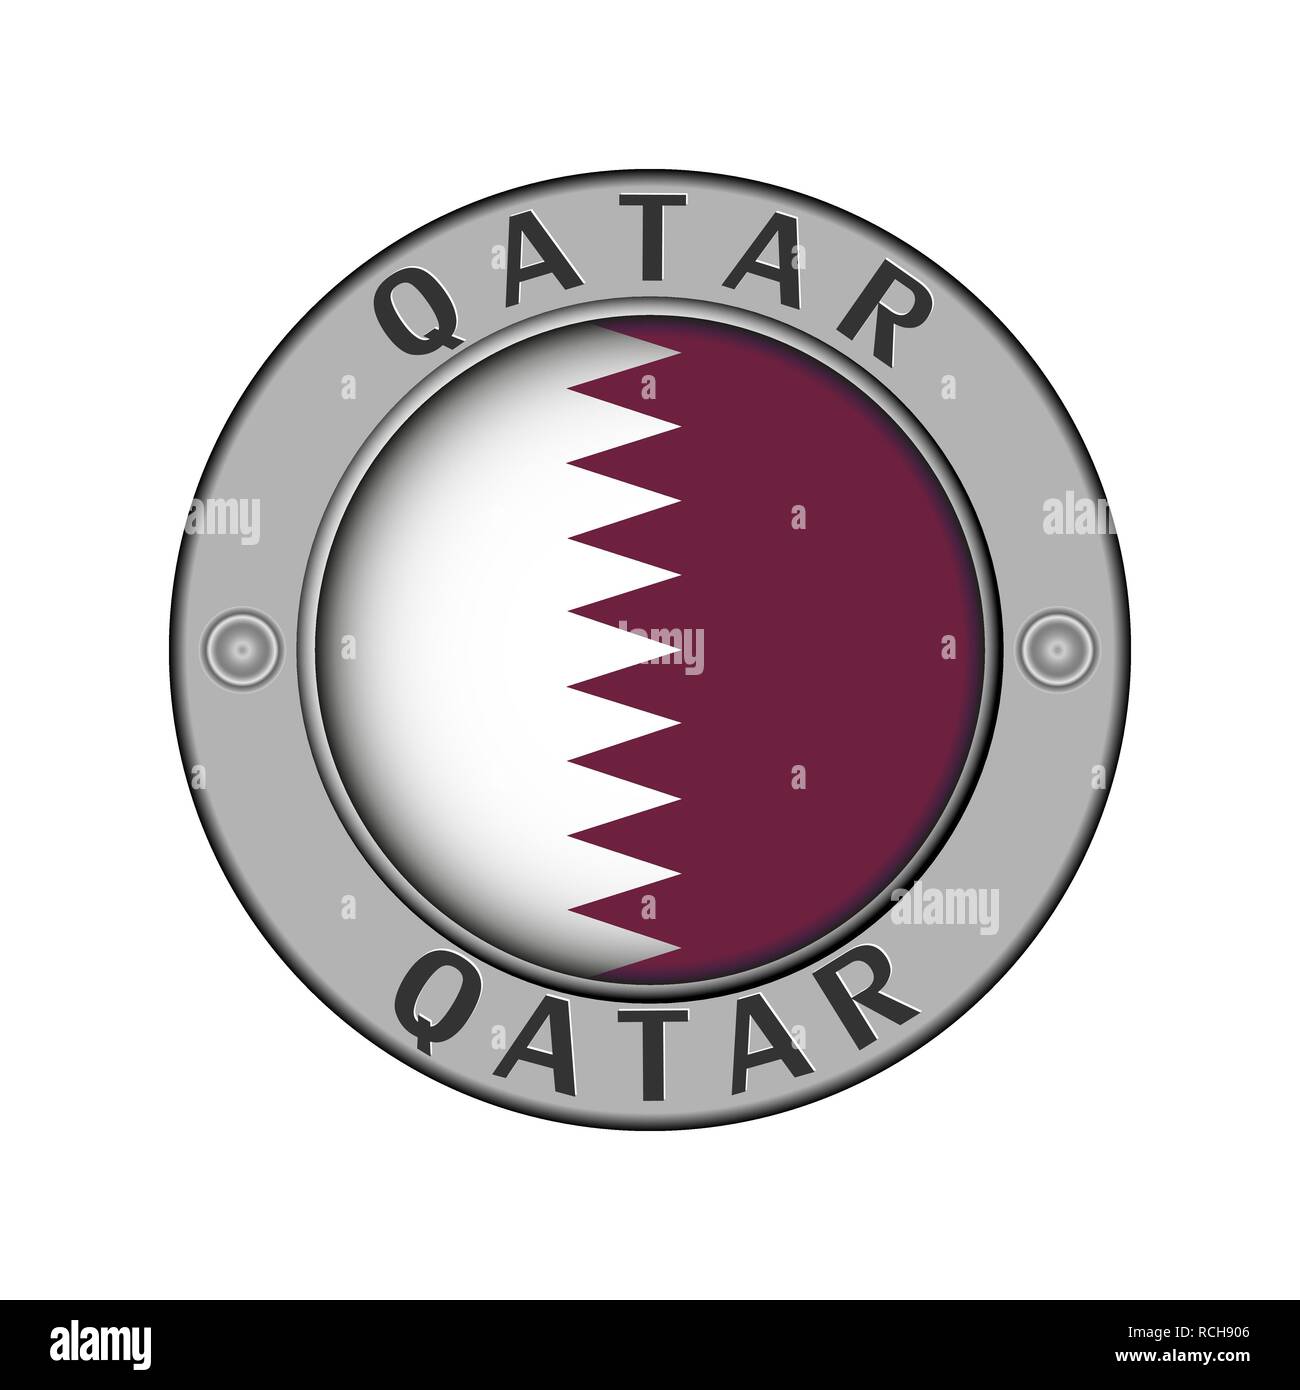 Rotondo di metallo medaglione con il nome del paese di Qatar e un indicatore rotondo nel centro Illustrazione Vettoriale